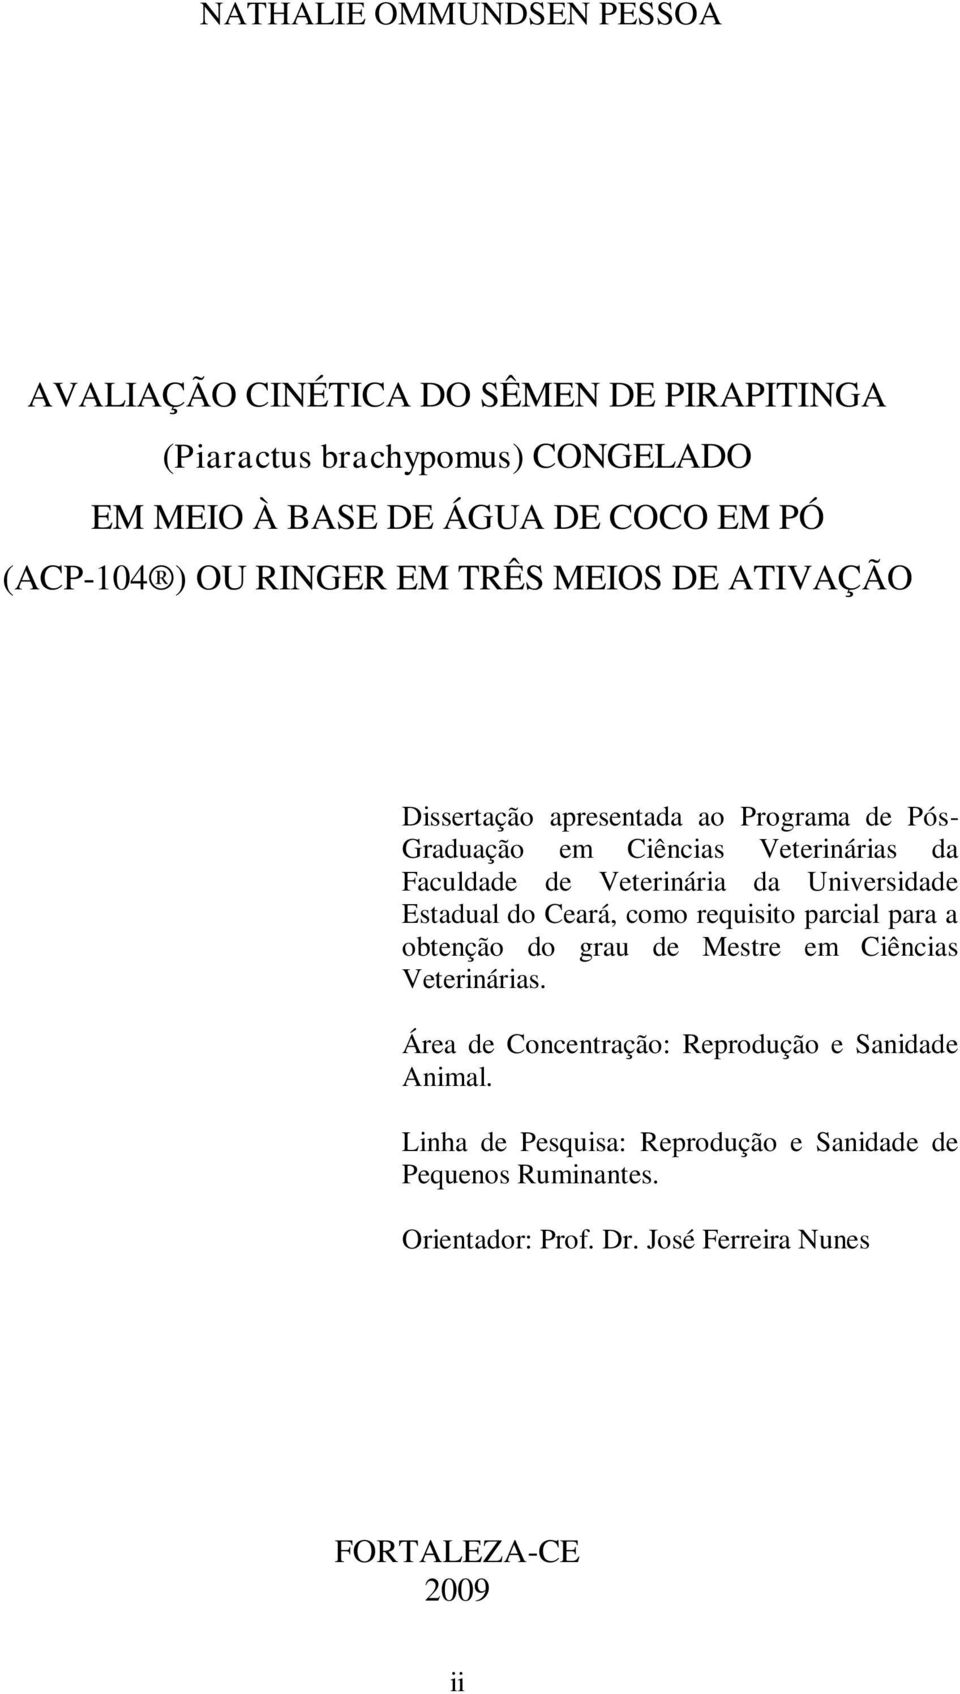 Veterinária da Universidade Estadual do Ceará, como requisito parcial para a obtenção do grau de Mestre em Ciências Veterinárias.